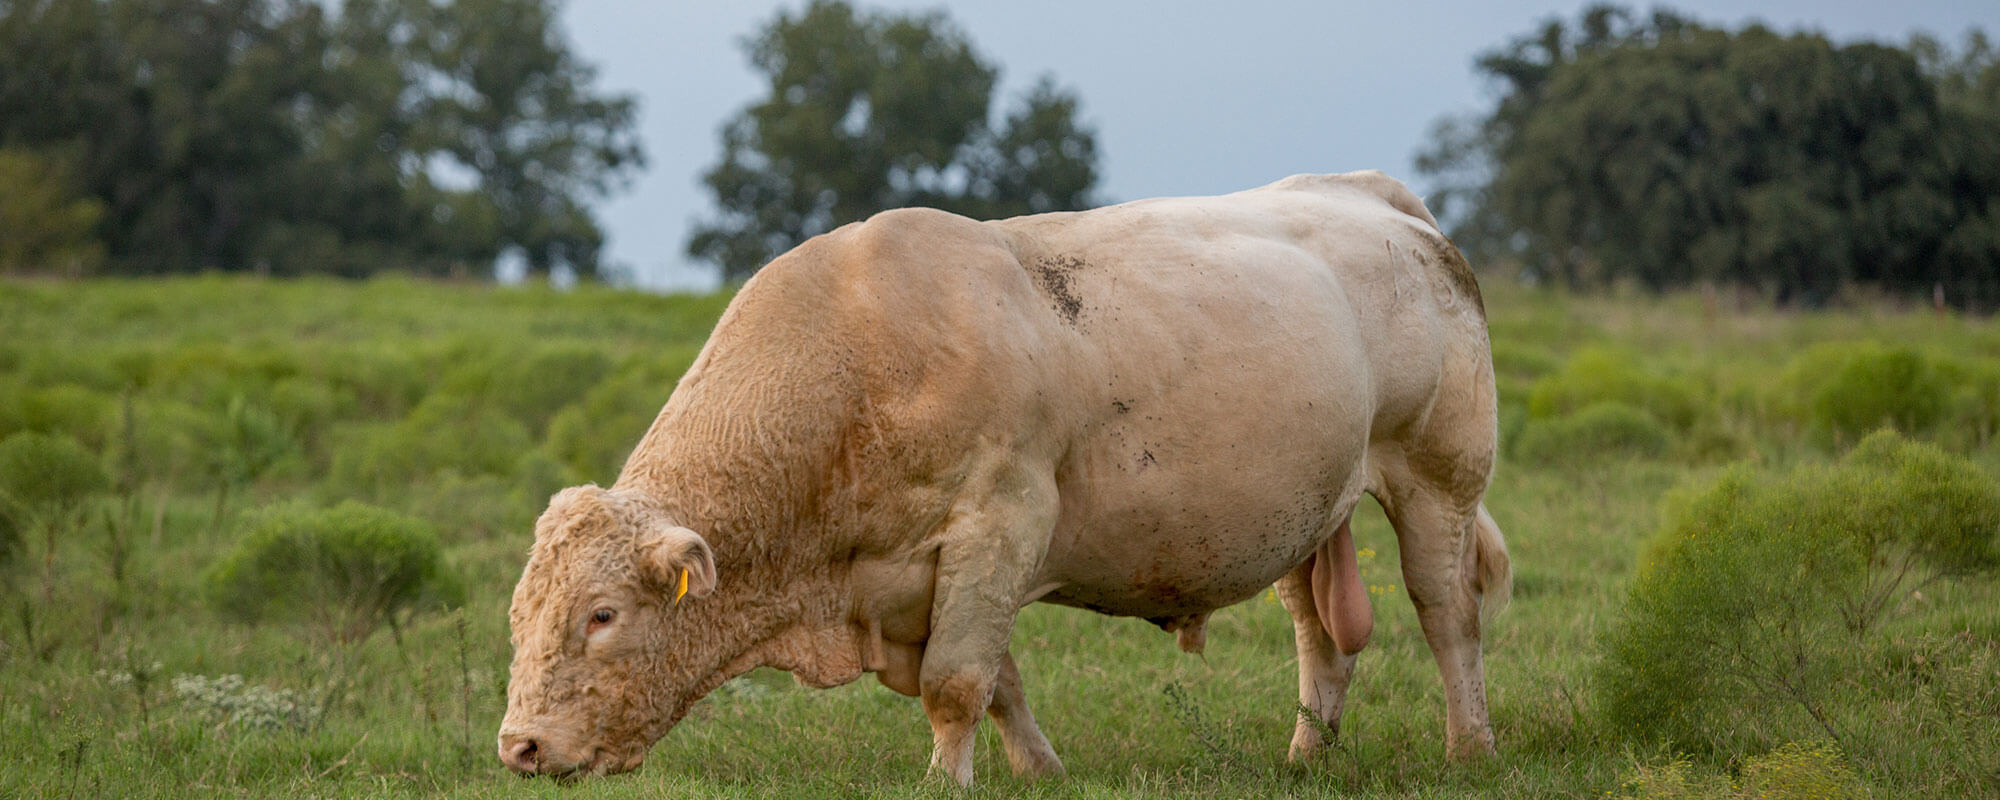 bull in a field